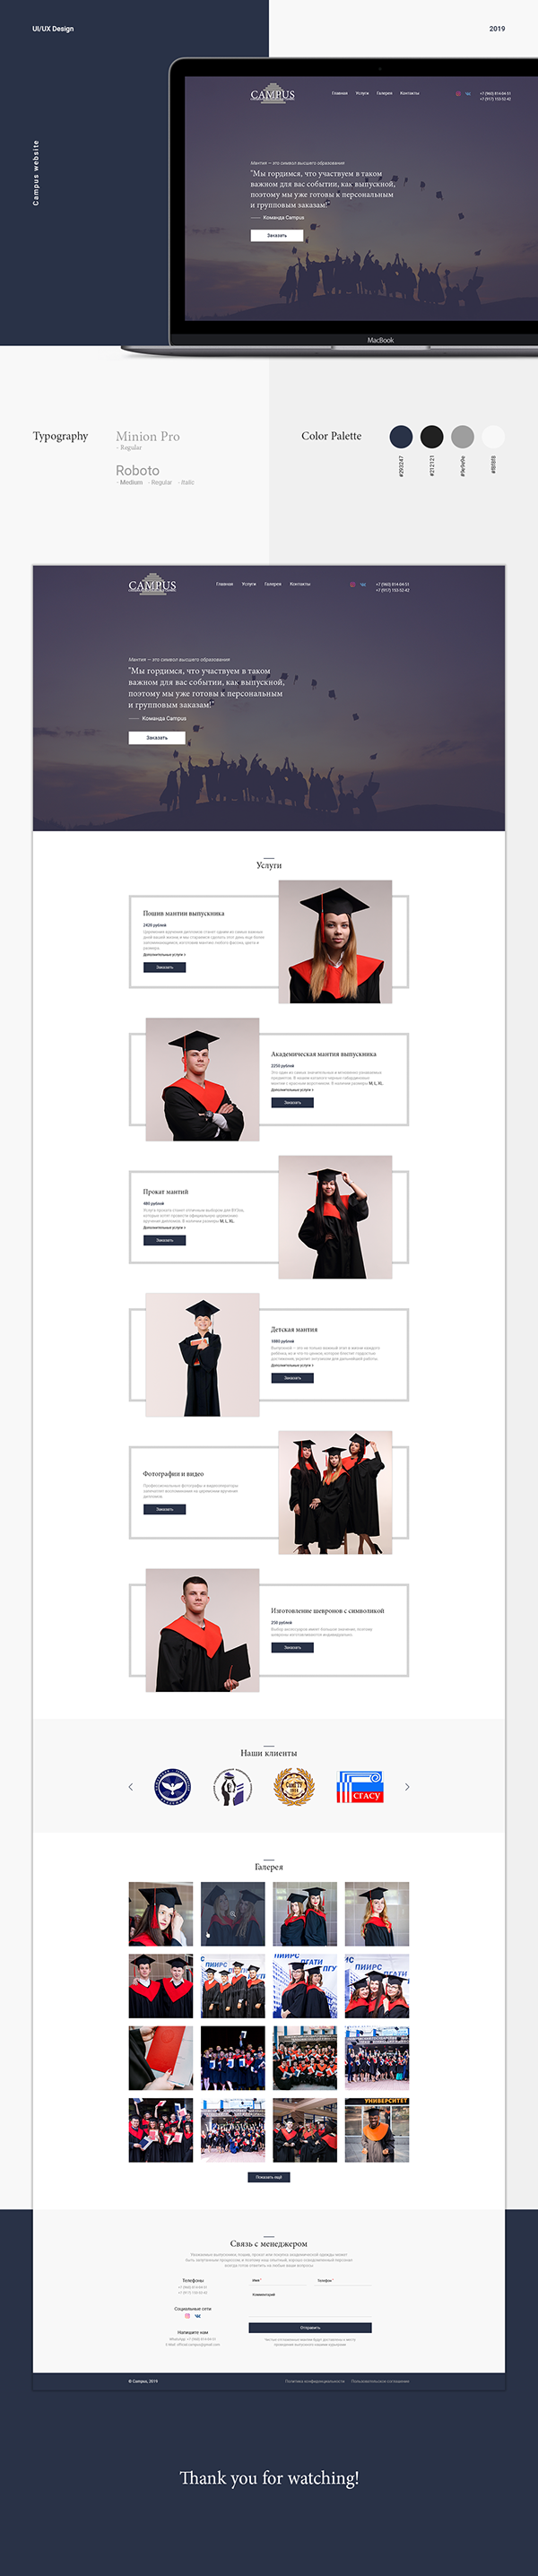 Campus Website